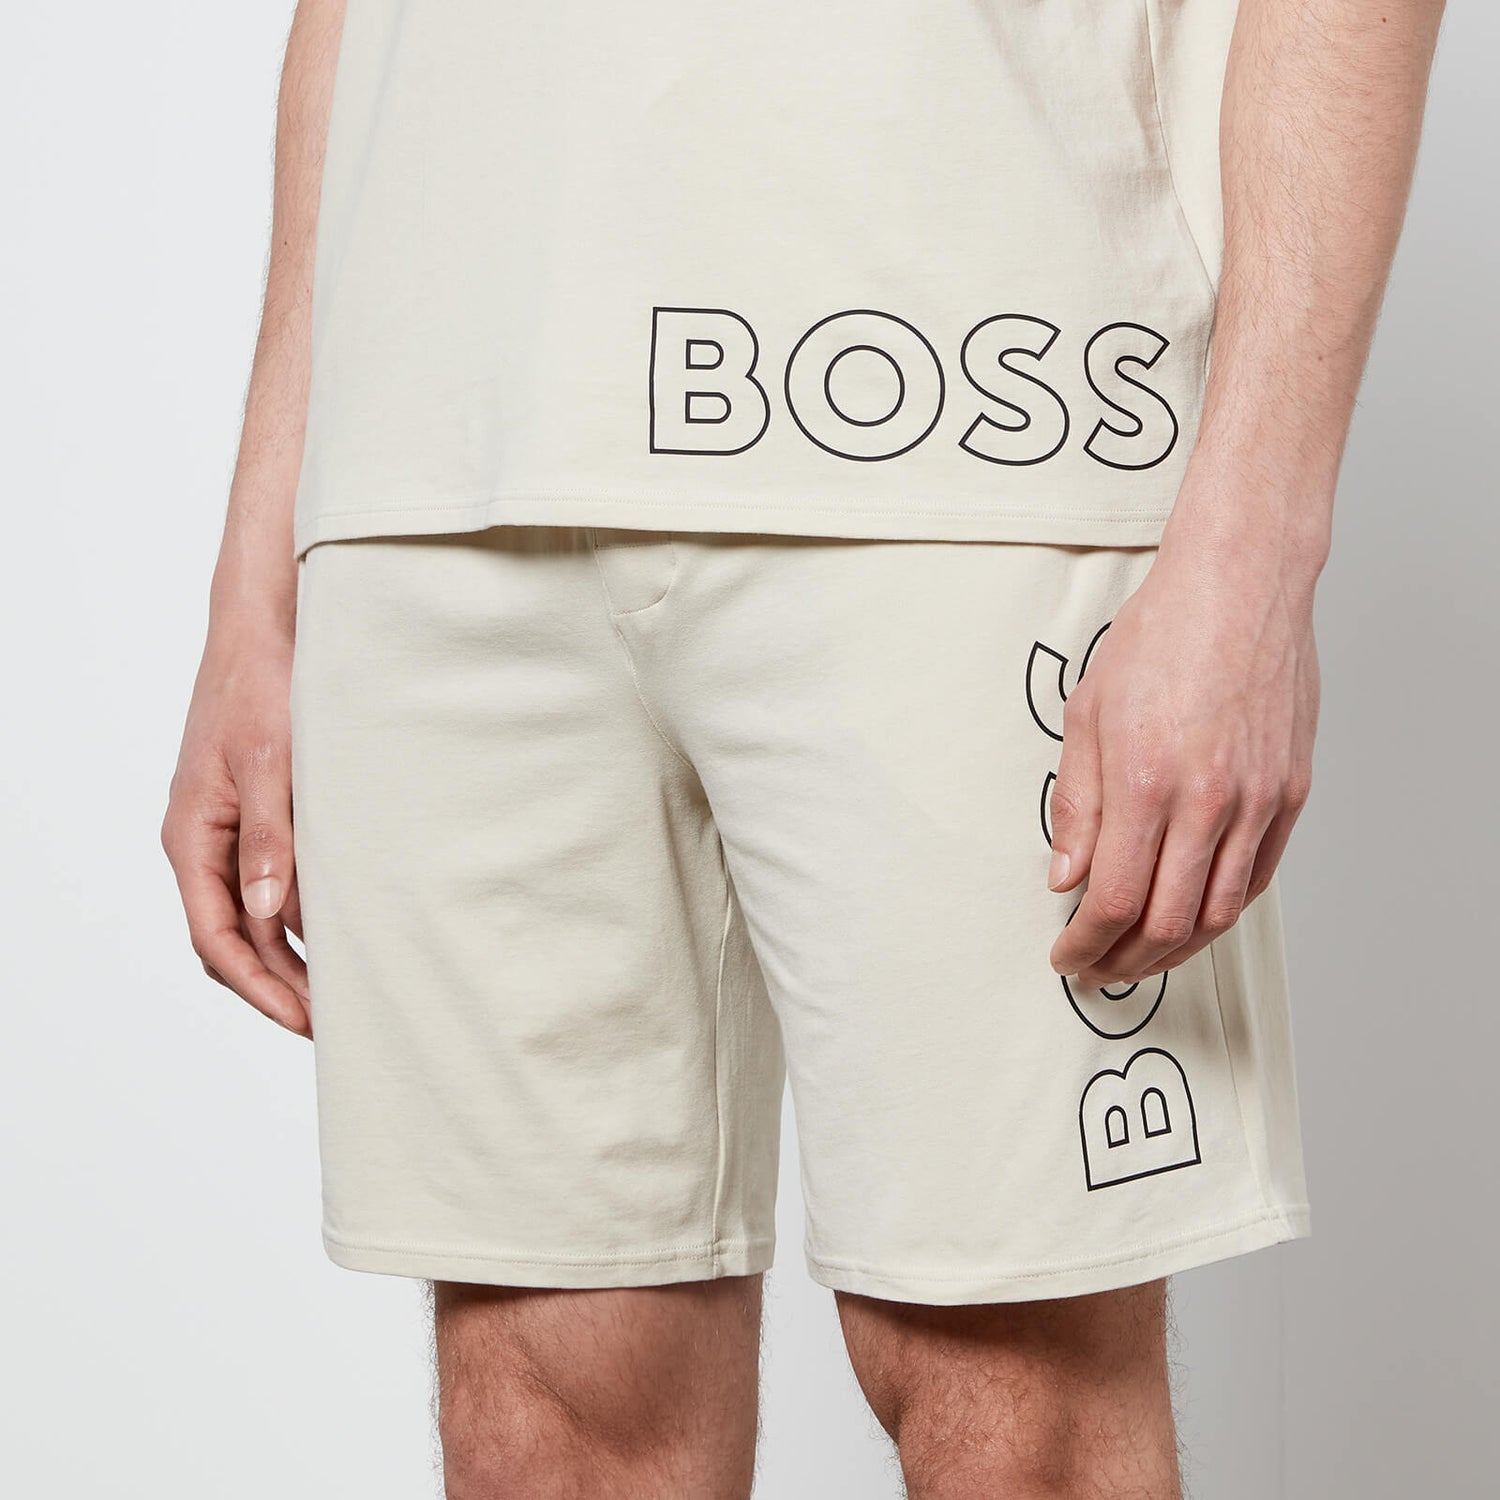 BOSS Bodywear Men's Identity Shorts - Light Beige - S